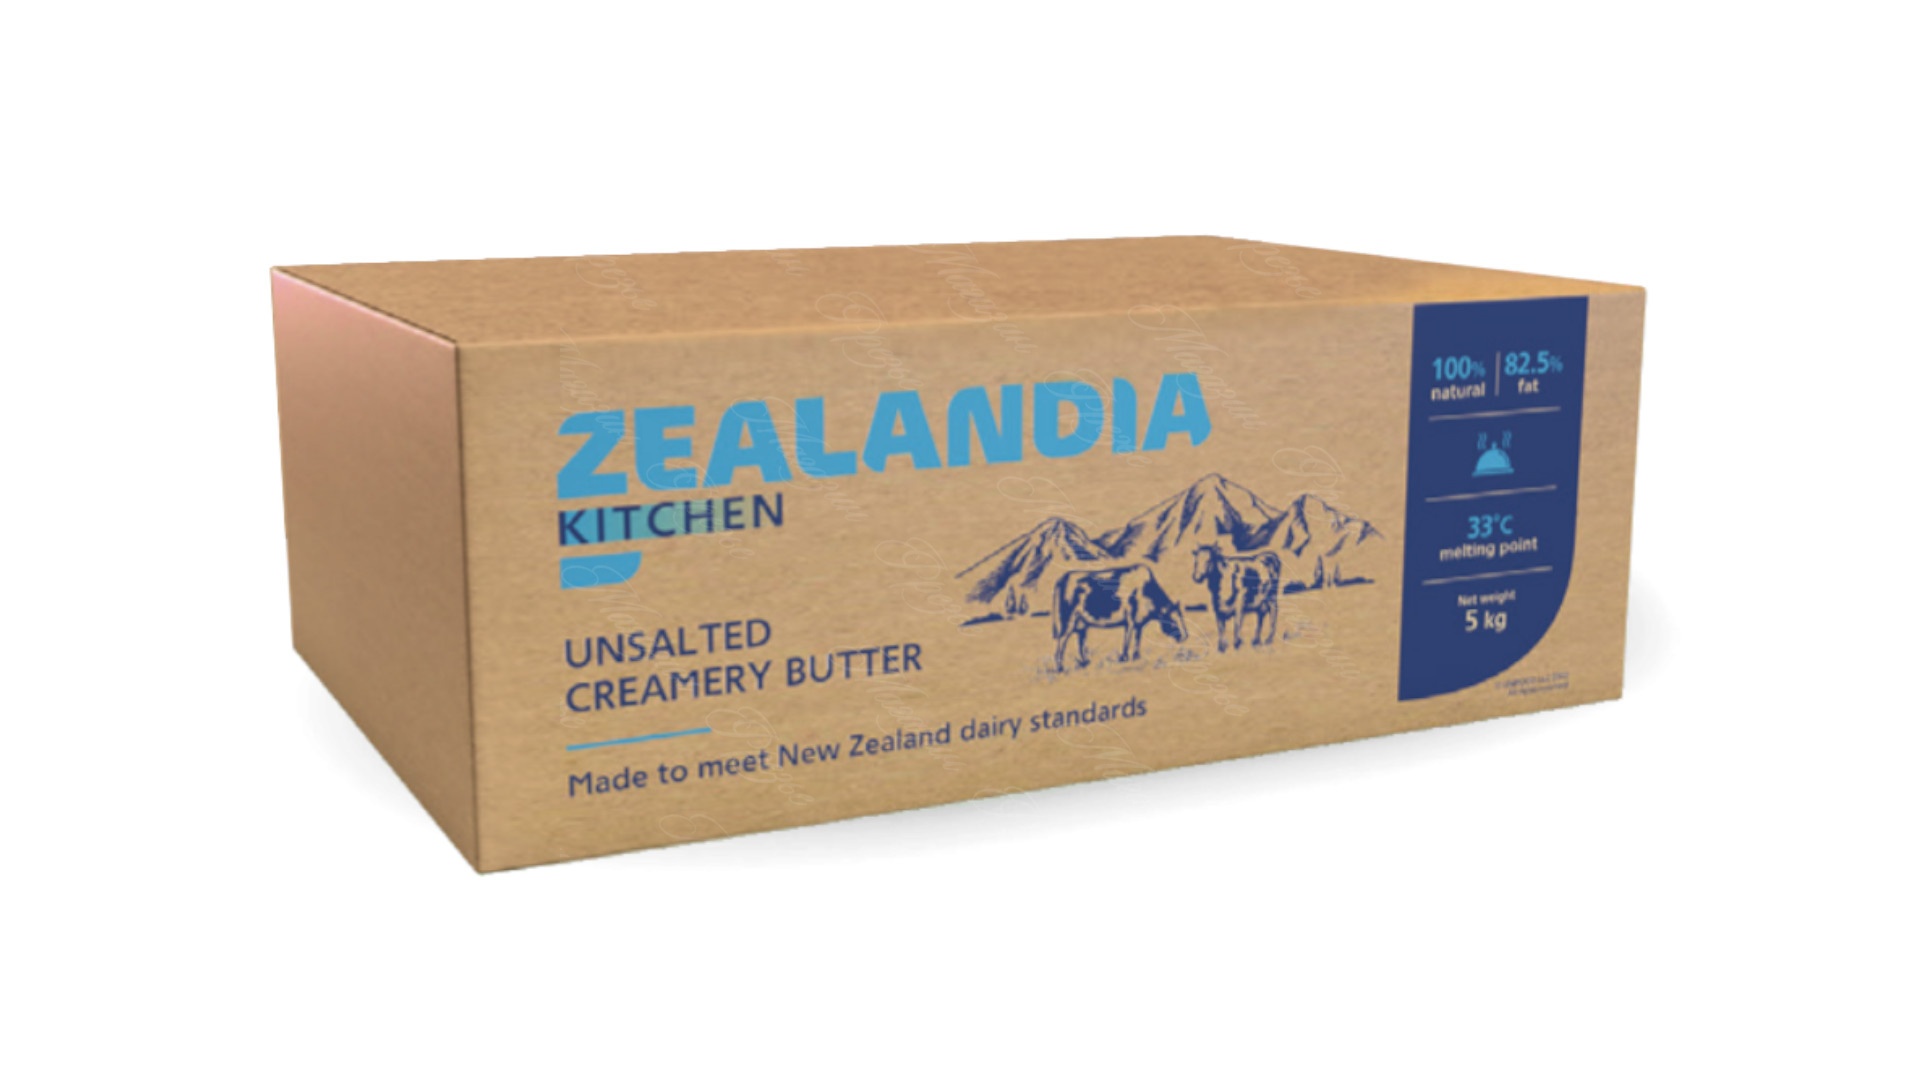 Масло «Традиционное» монолит 5 кг 82,5% Зеландия Китчен / Zealandia Kitchen от кондитерского магазина Фрезье https://fraisier.ru